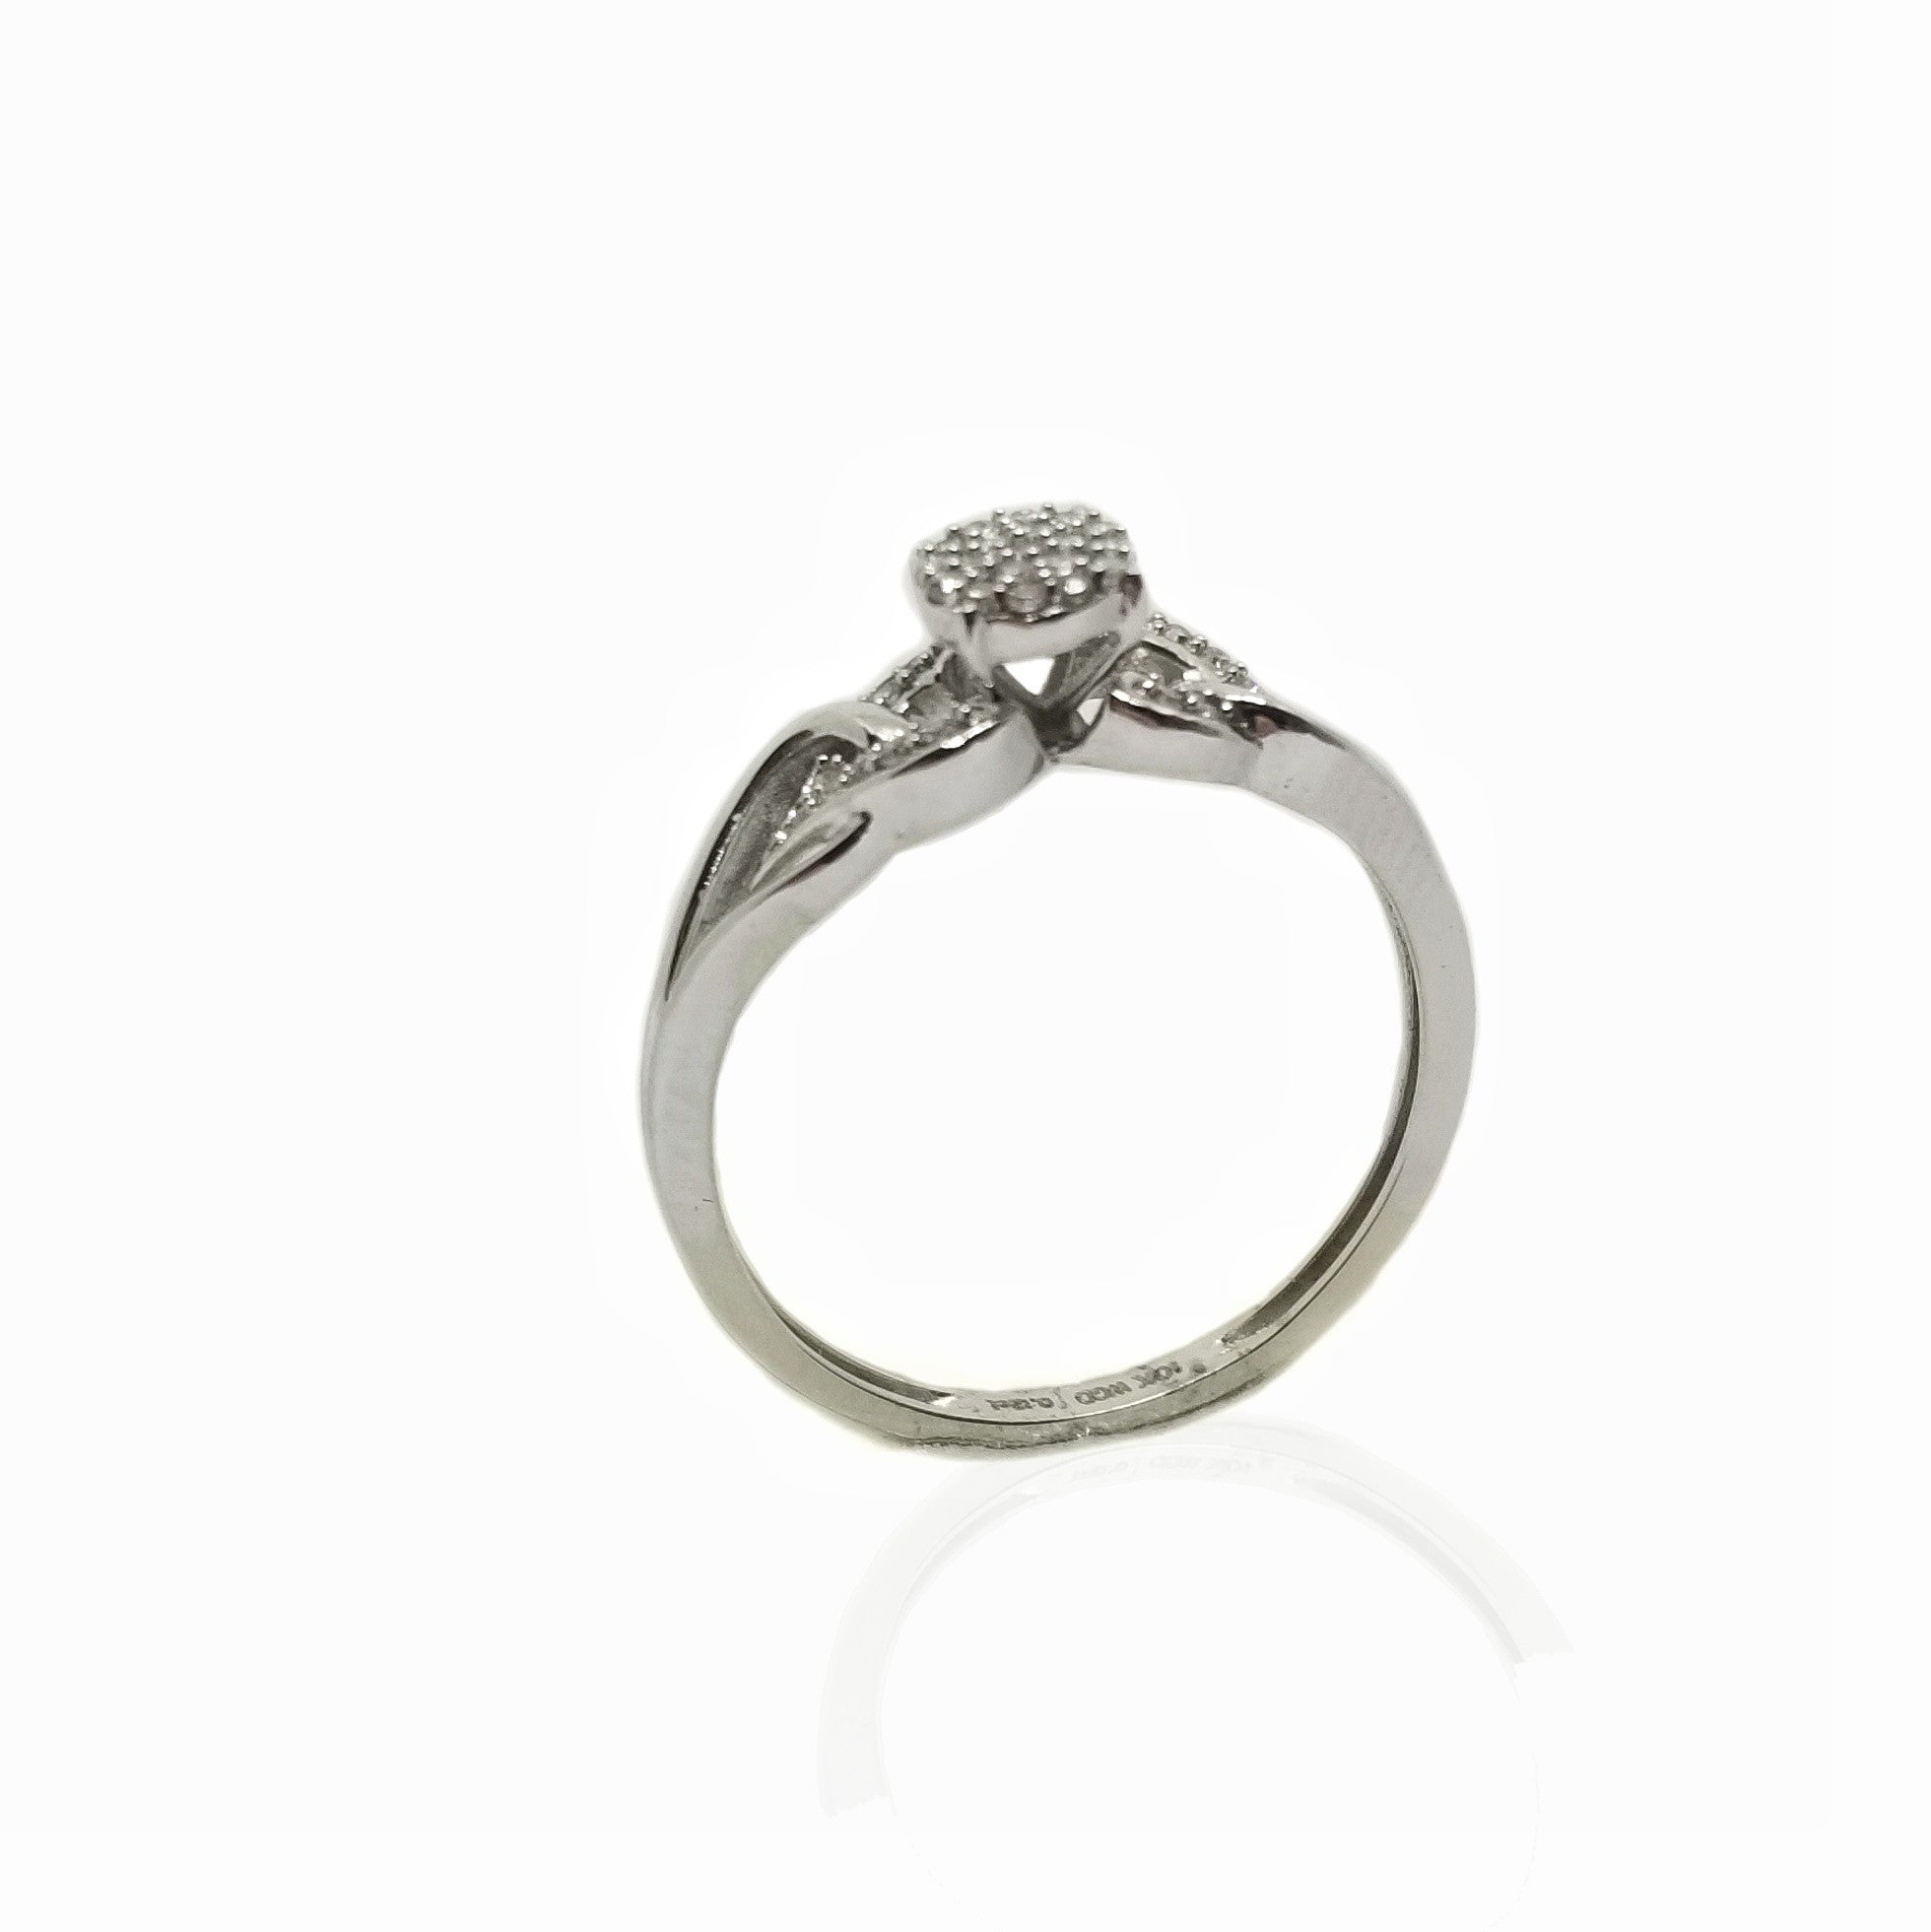 10k white gold diamond engagement ring